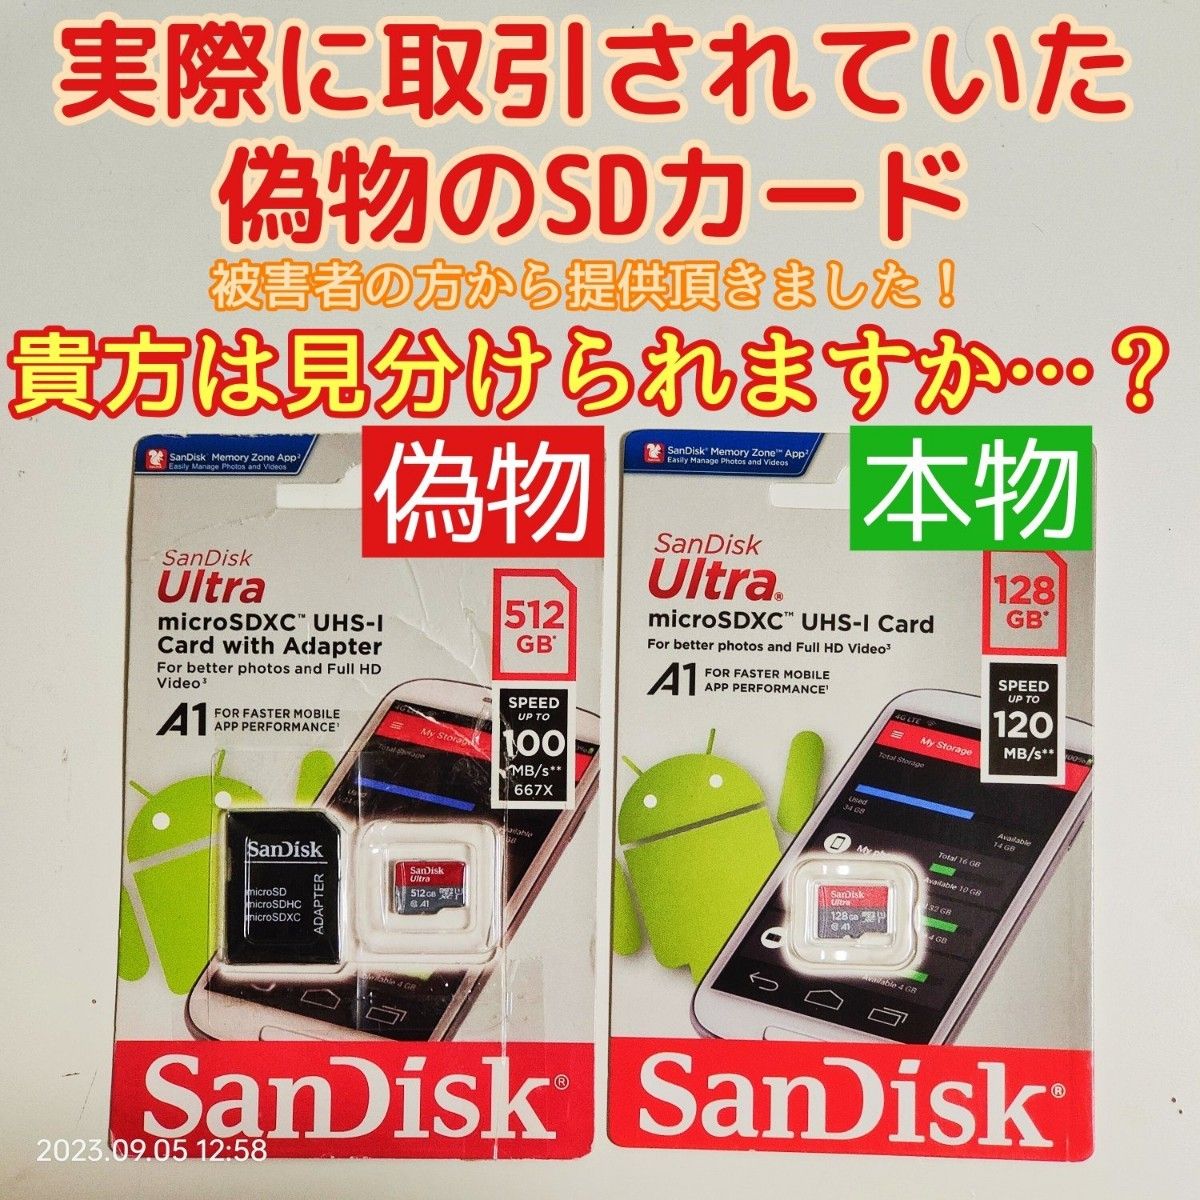 microsd マイクロSD カード 64GB 1枚★高耐久・ドラレコ推奨品★